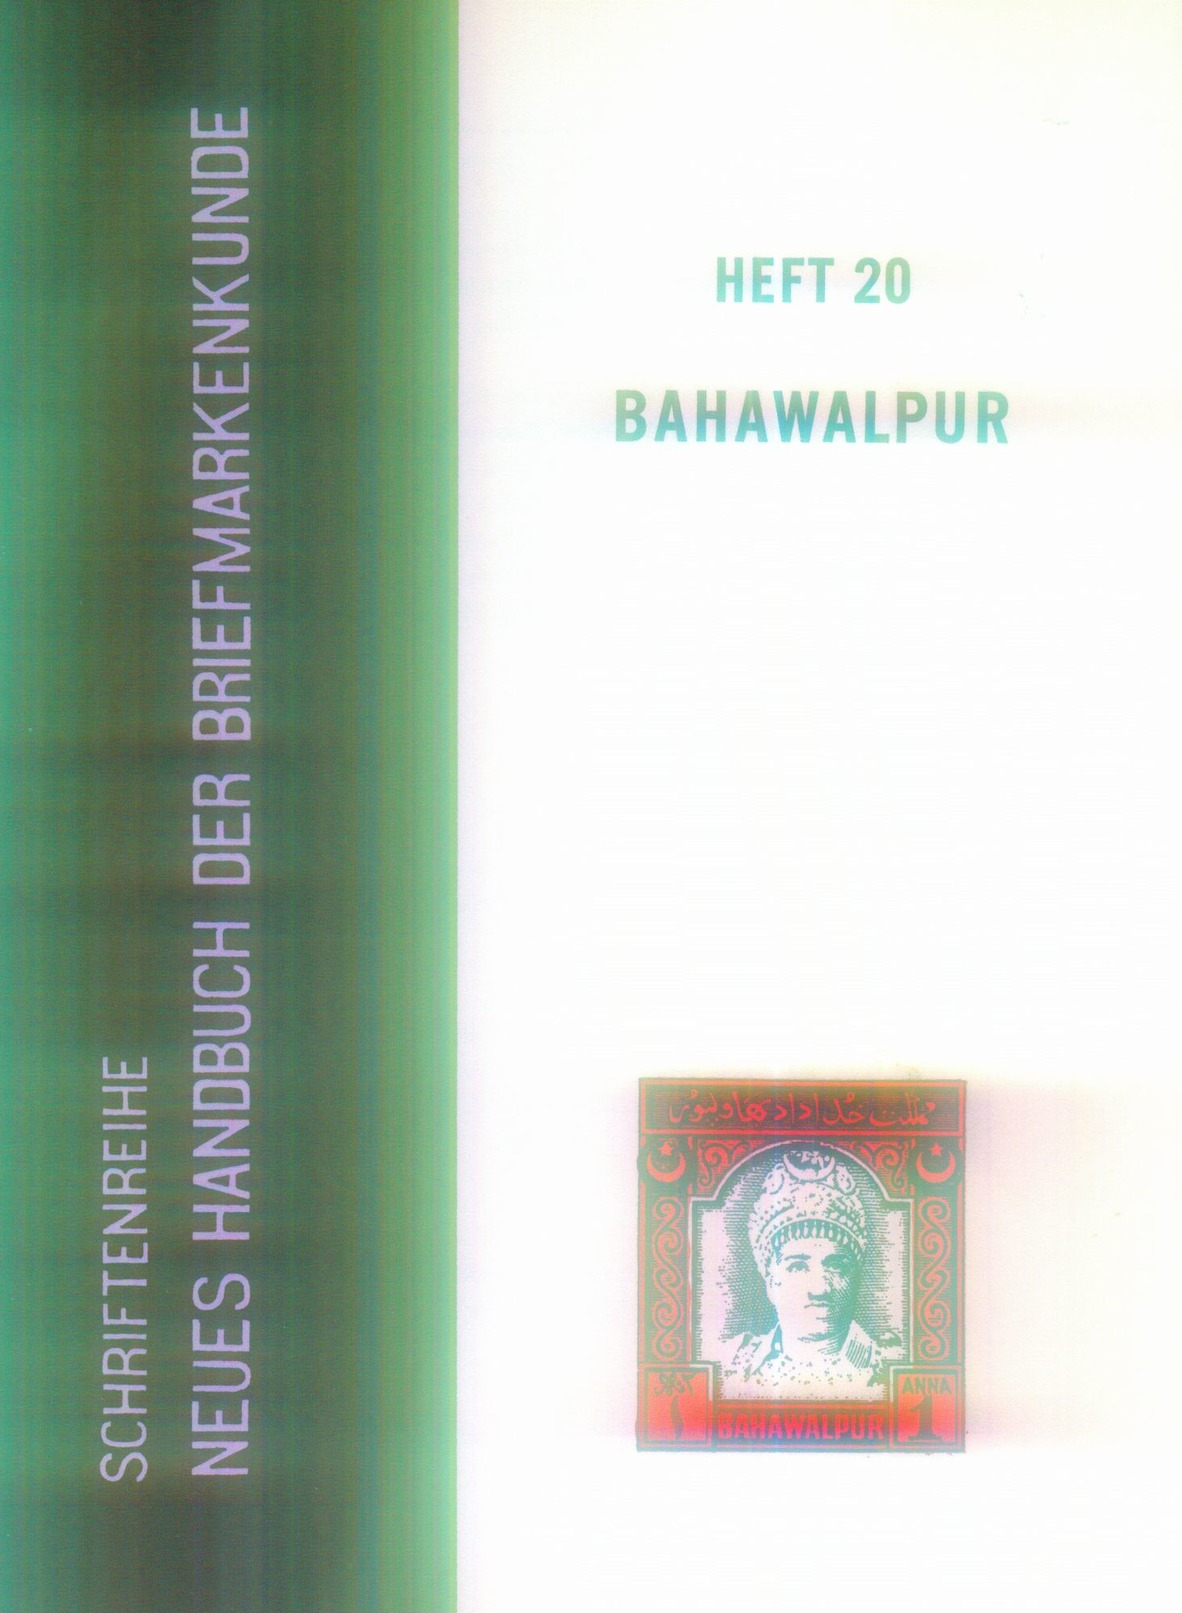 Bahawalpur British Indien  Heft 20 Neues Handbuch Für Briefmarkenkunde - Handbücher